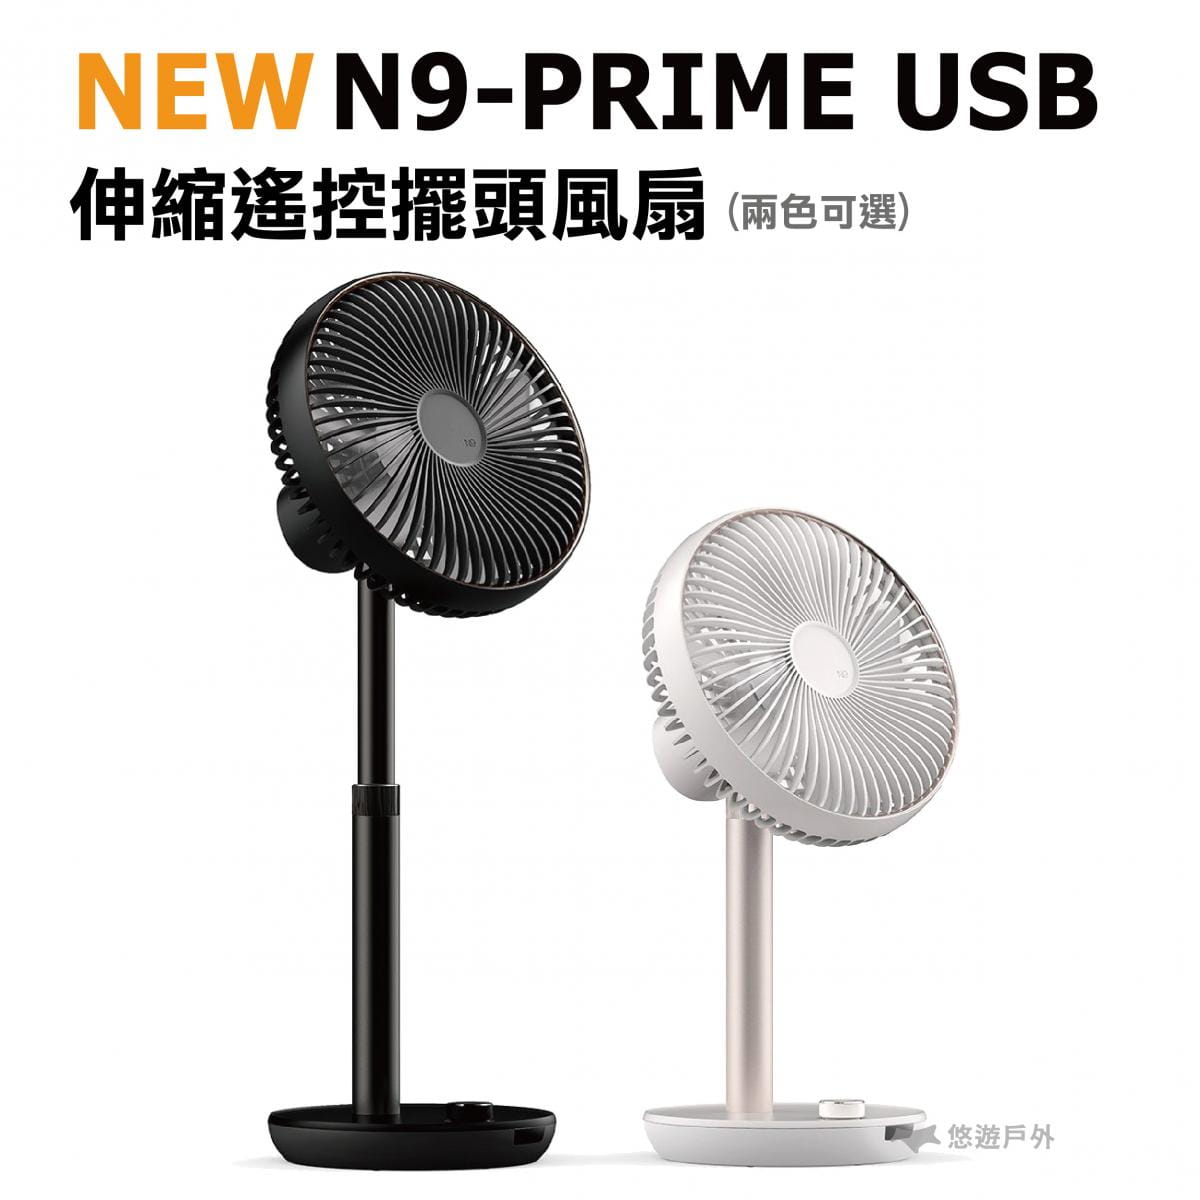 【悠遊戶外】N9 PRIME USB伸縮遙控擺頭風扇 公司貨 0